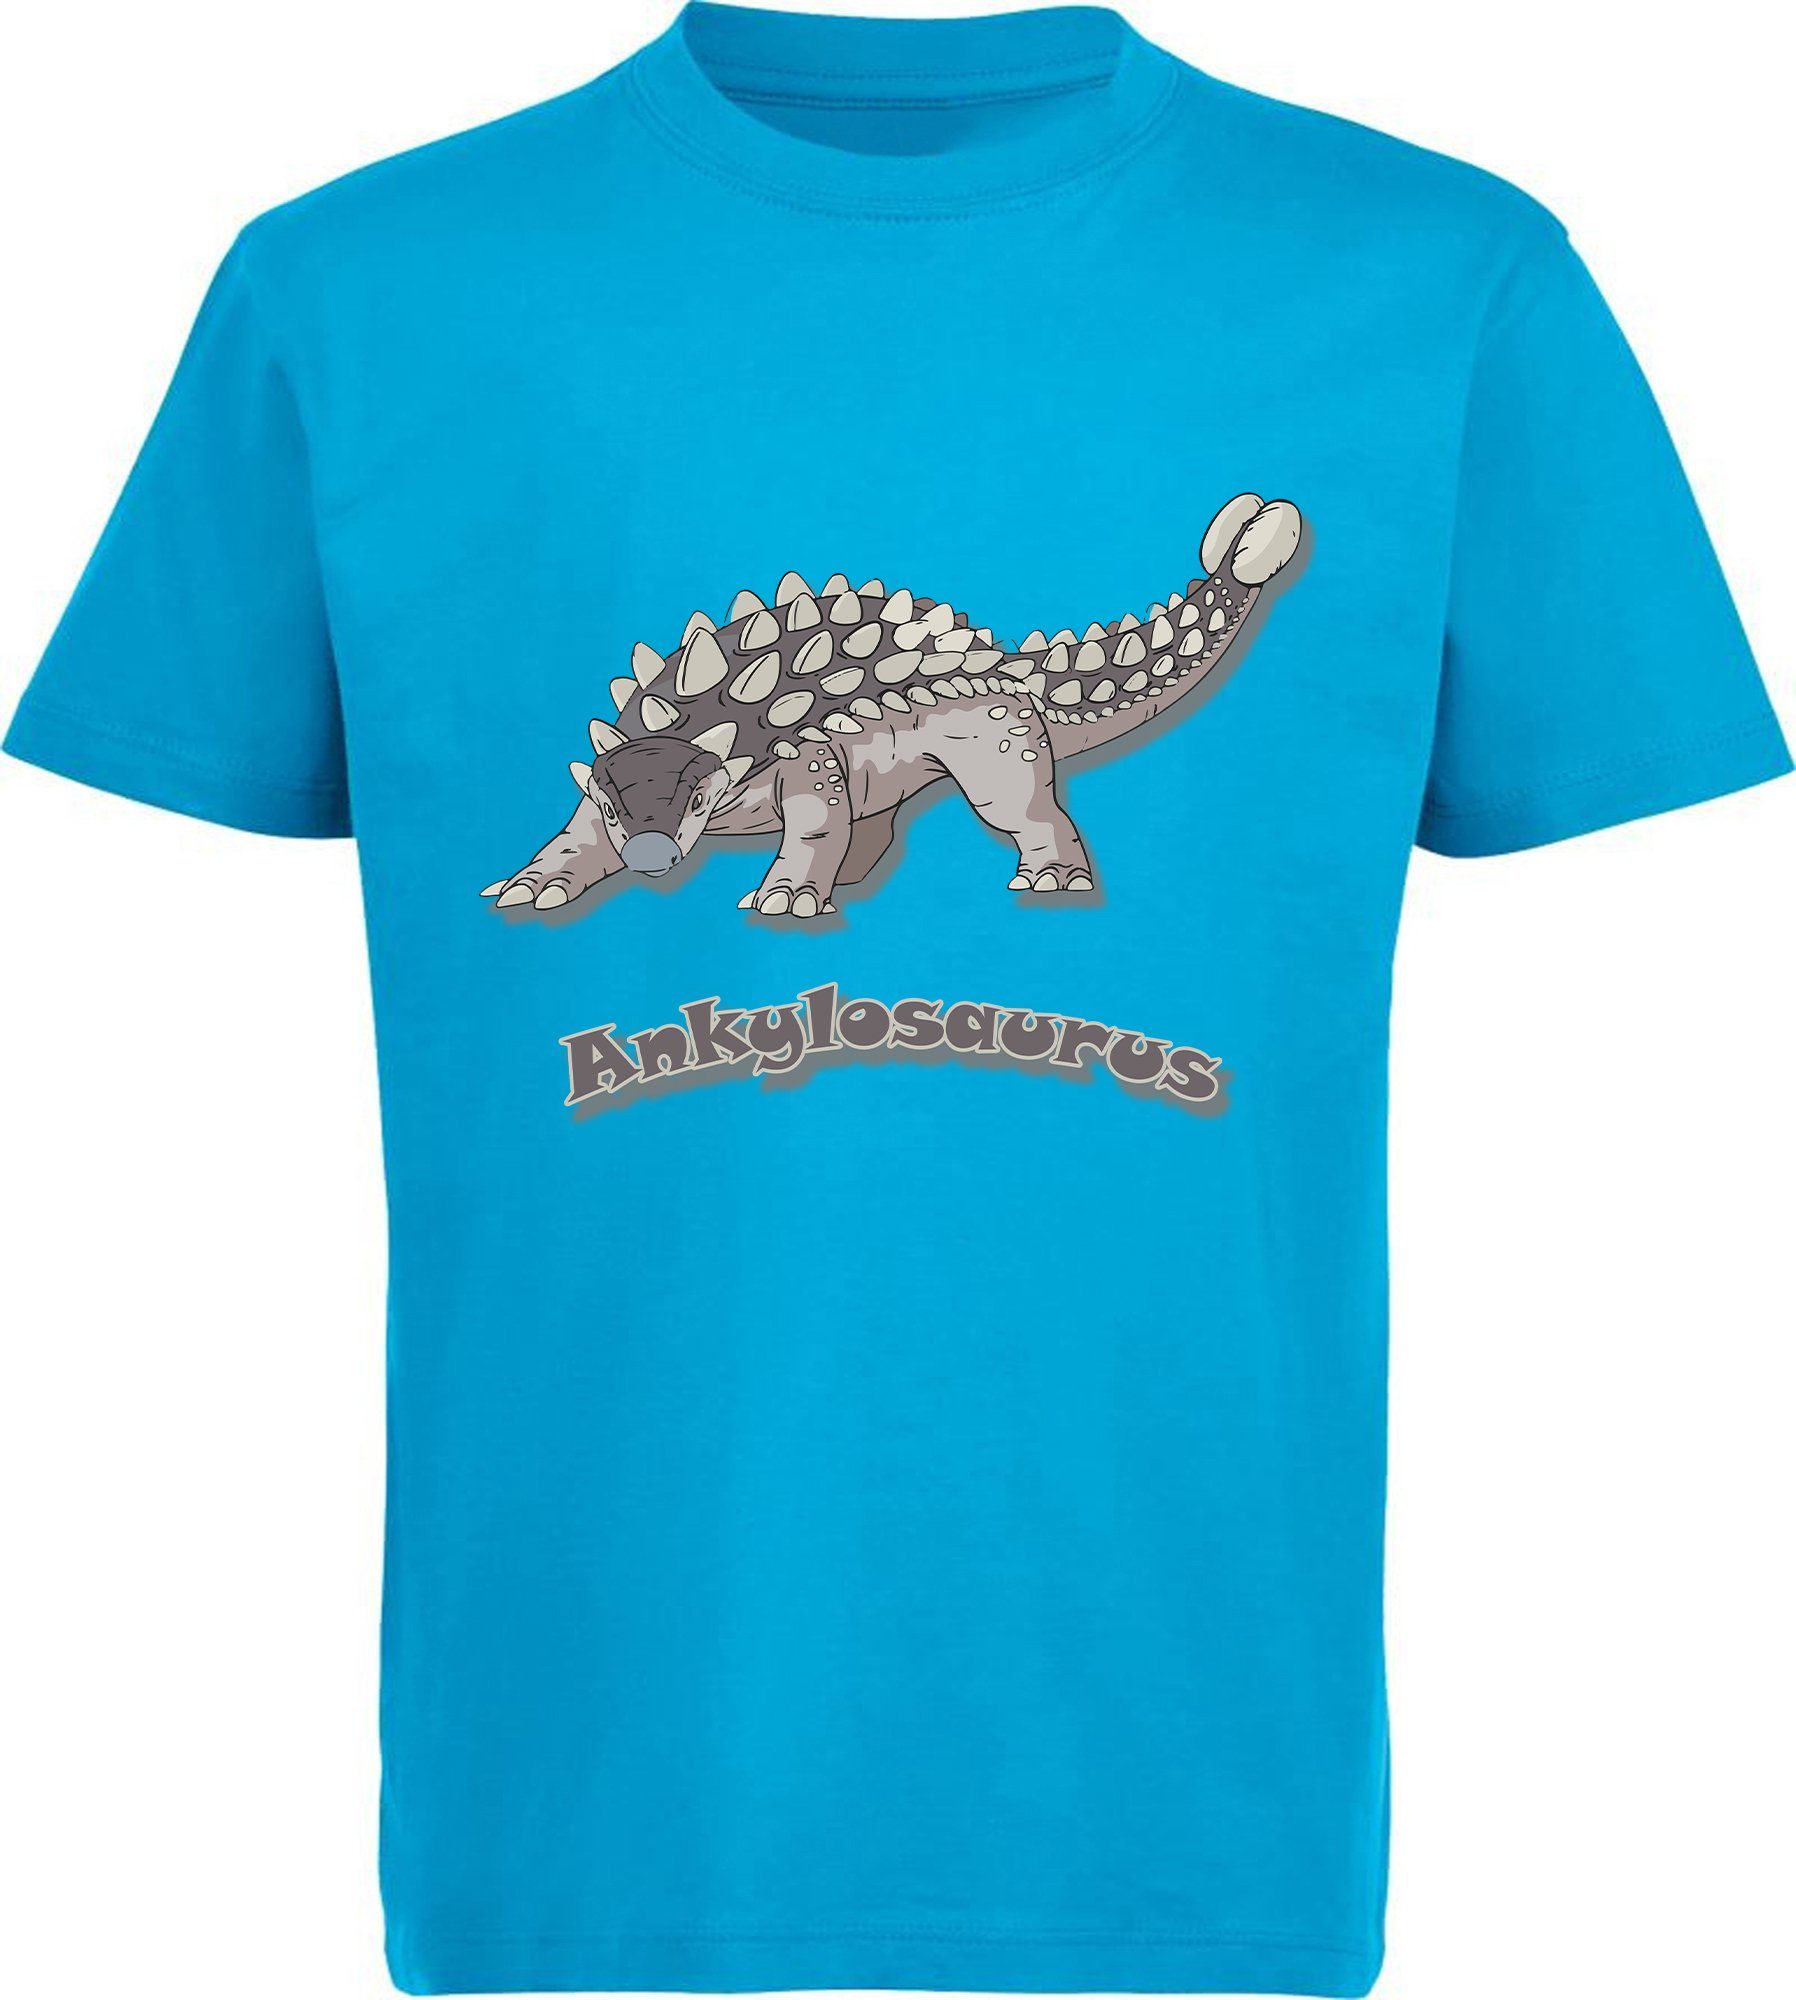 MyDesign24 Print-Shirt bedrucktes Kinder T-Shirt mit Ankylosaurus 100% Baumwolle mit Dino Aufdruck, schwarz, weiß, rot, blau, i63 aqua blau